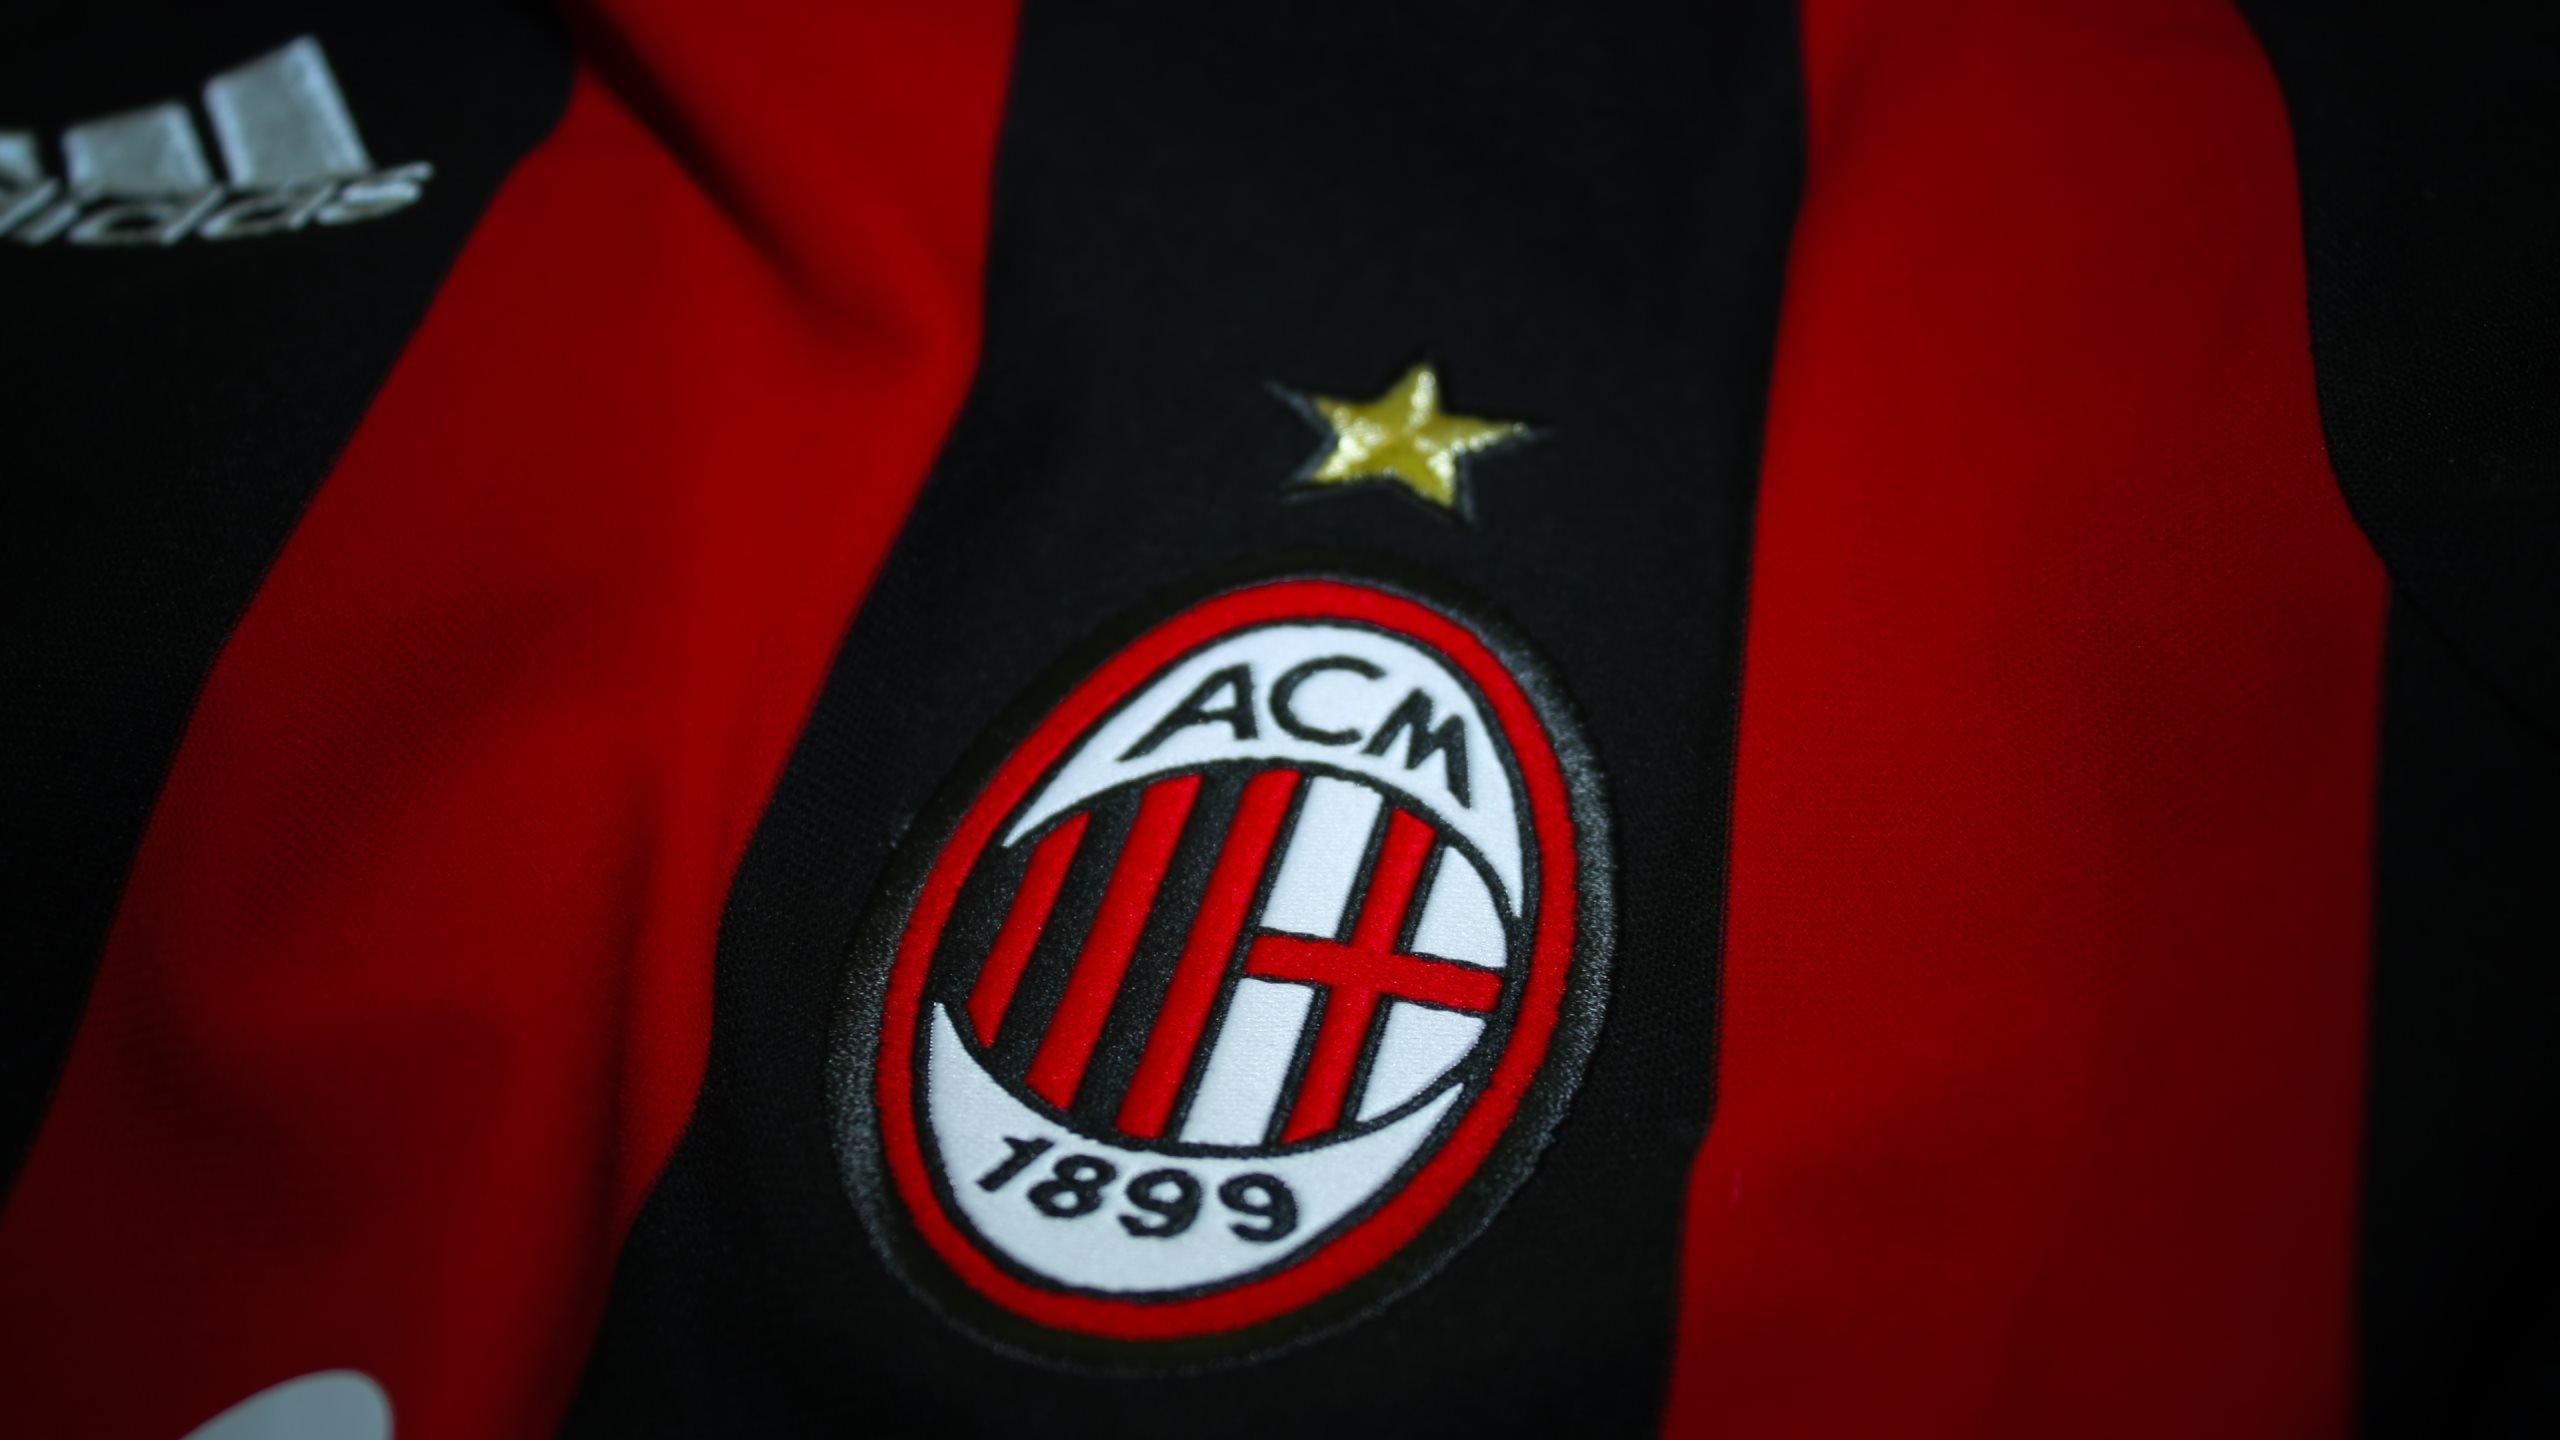 Jersey kandang AC Milan untuk musim 2022-2023 mulai bocor di dunia maya. Penampilan jersey baru ini terkesan lebih sangar, membuat netizen ikut takjub. - INDOSPORT